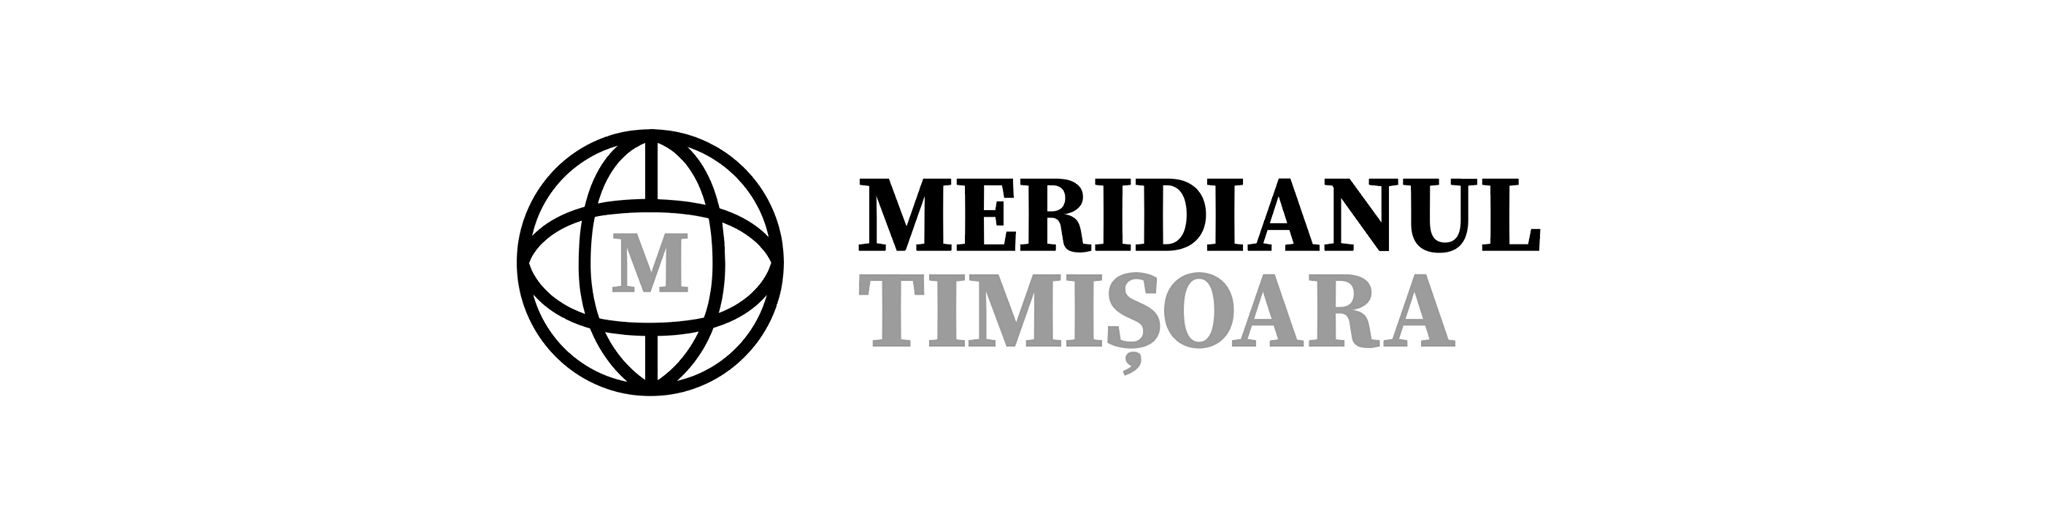 Meridianul Timisoara